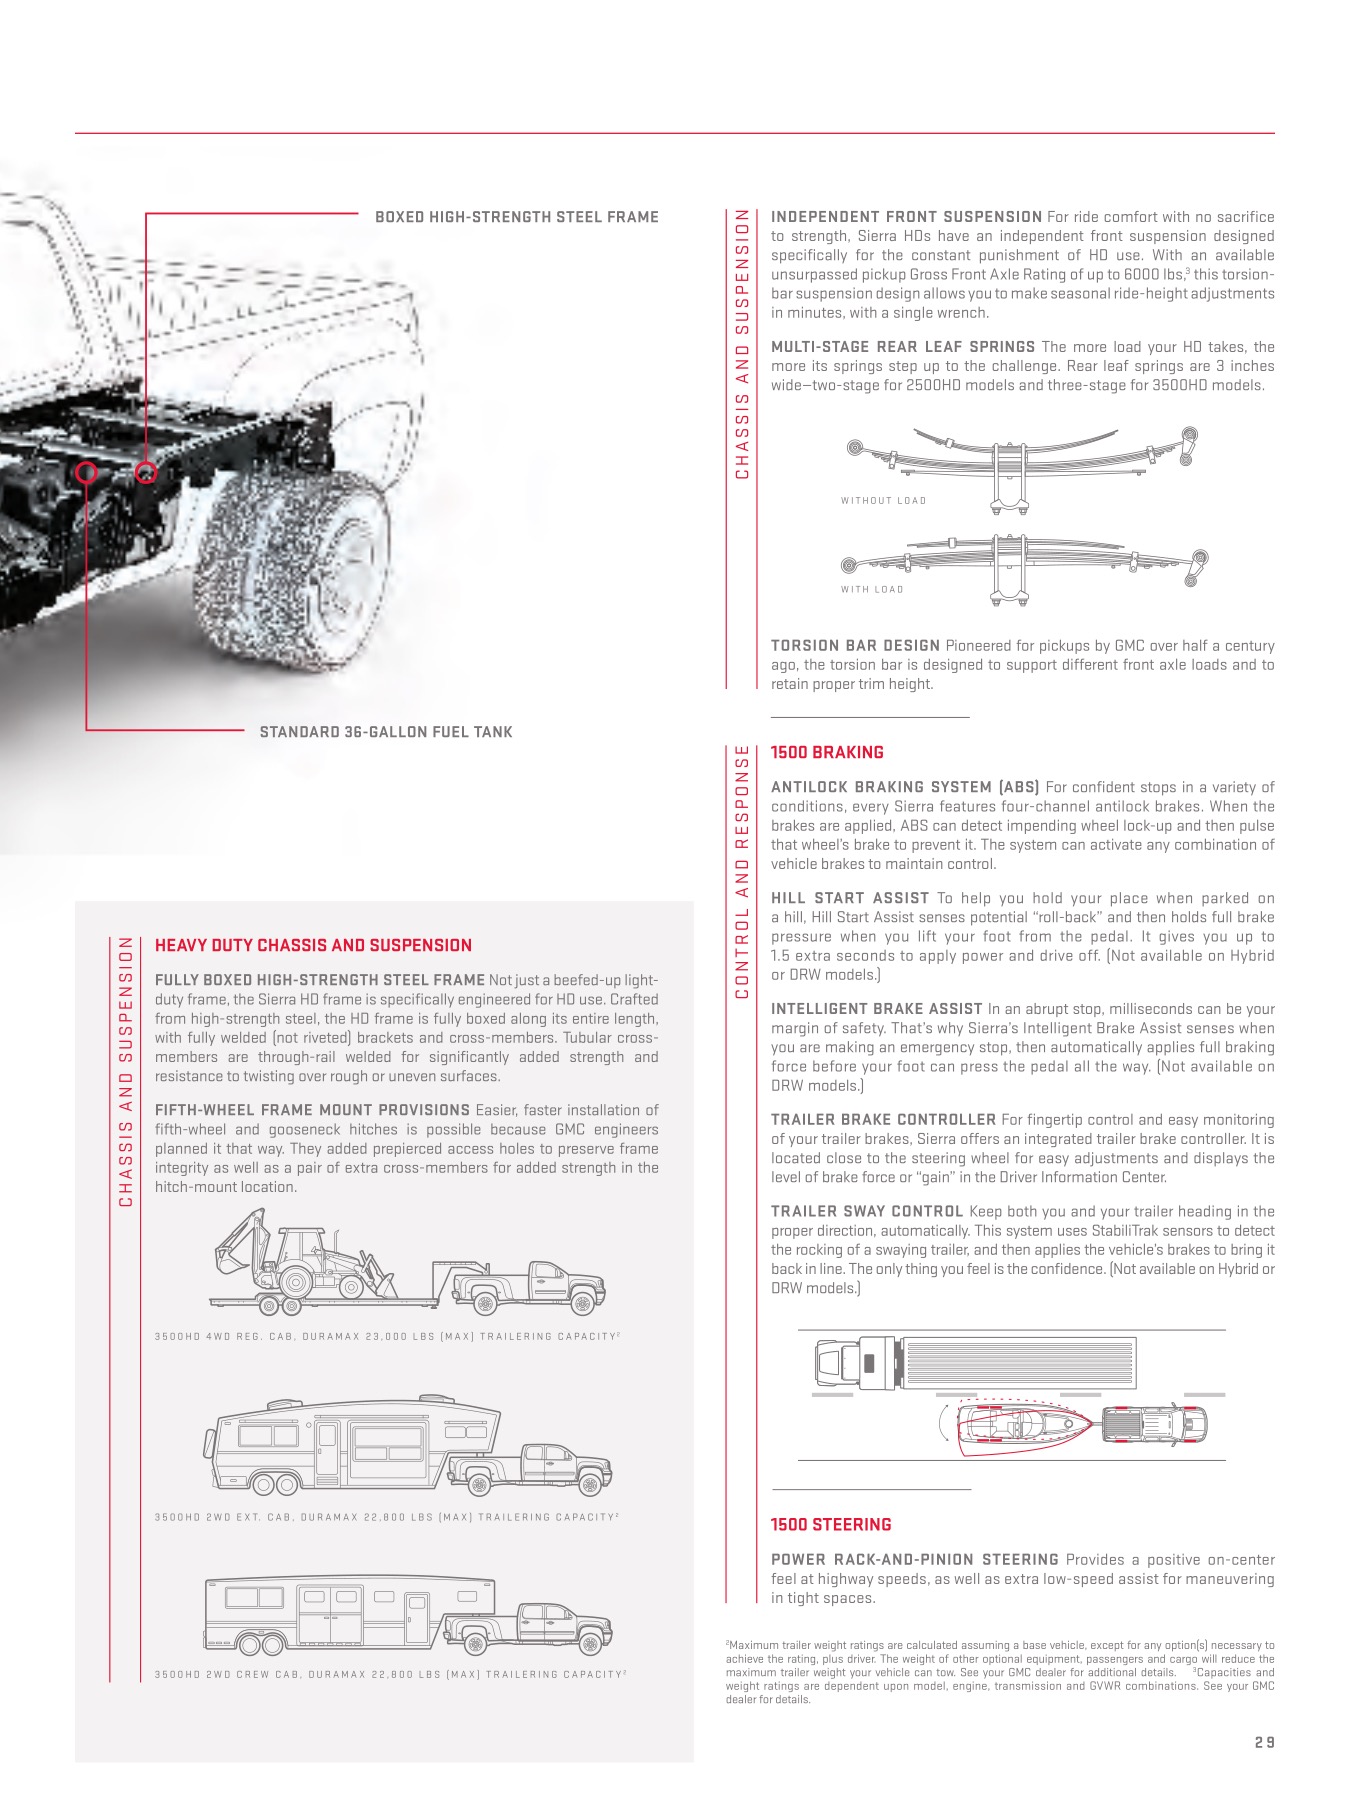 2012 GMC Sierra Brochure Page 17